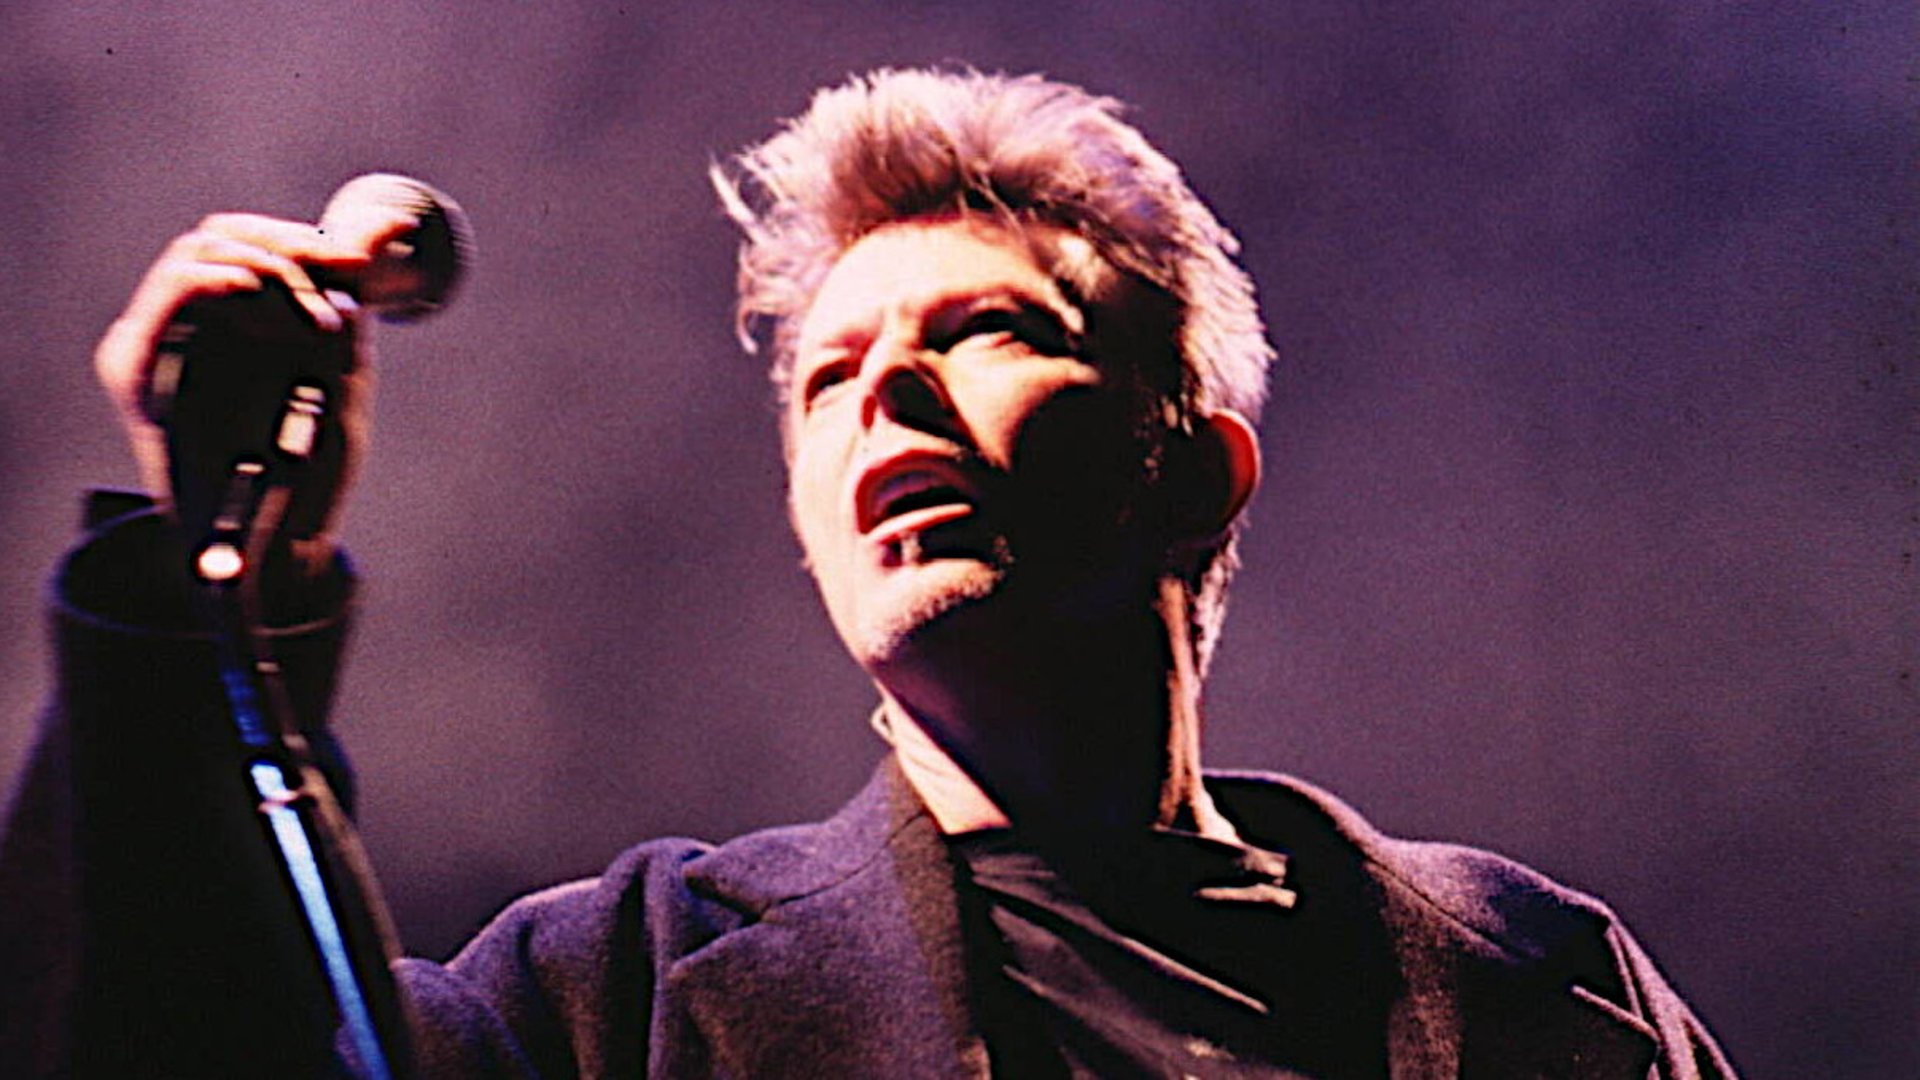 #„Moonage Daydream“-Trailer: Eine eindringliche Reise in die schillernde Welt des David Bowie